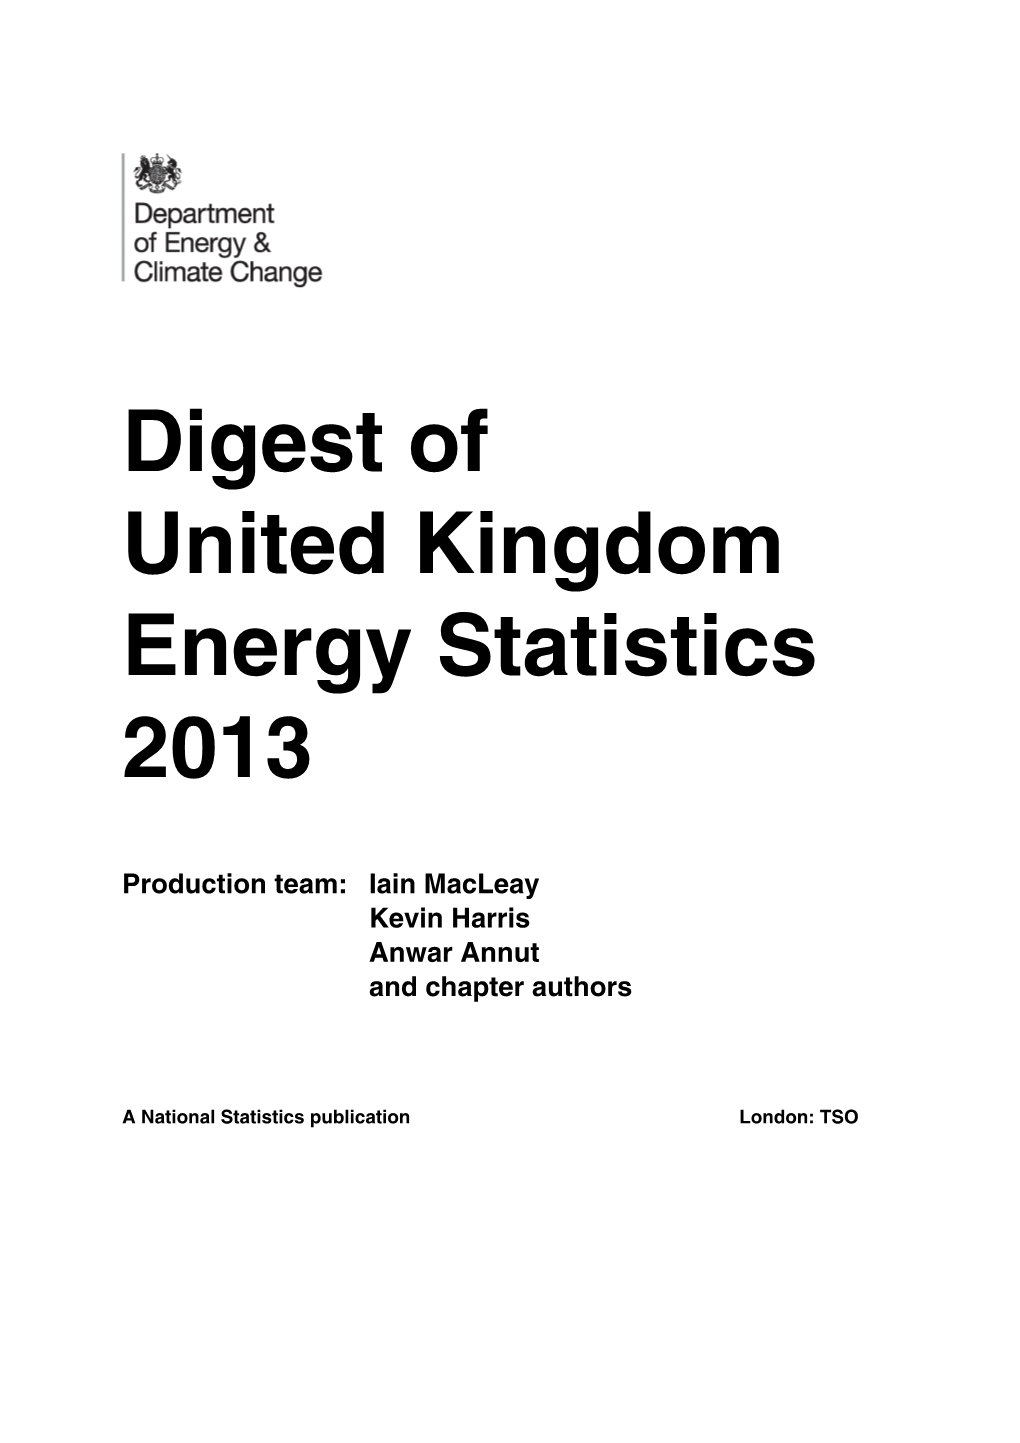 Digest of United Kingdom Energy Statistics 2013